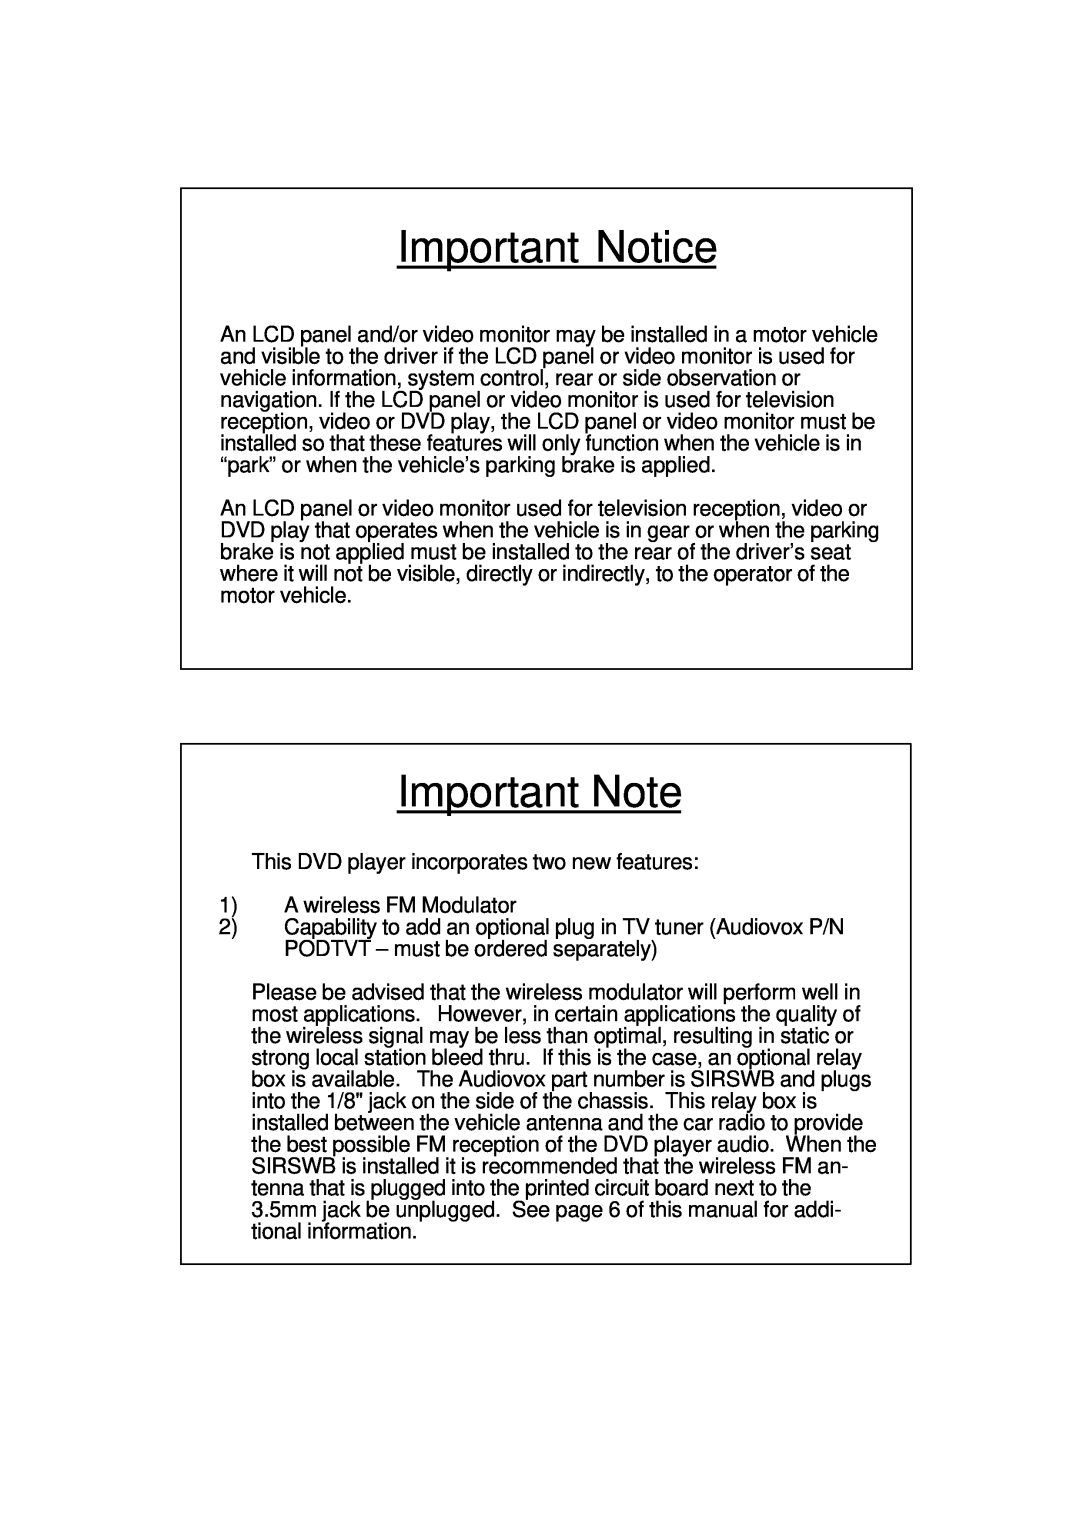 Recoton/Advent ADV350B, ADV350S, ADV350P manual Important Notice, Important Note 